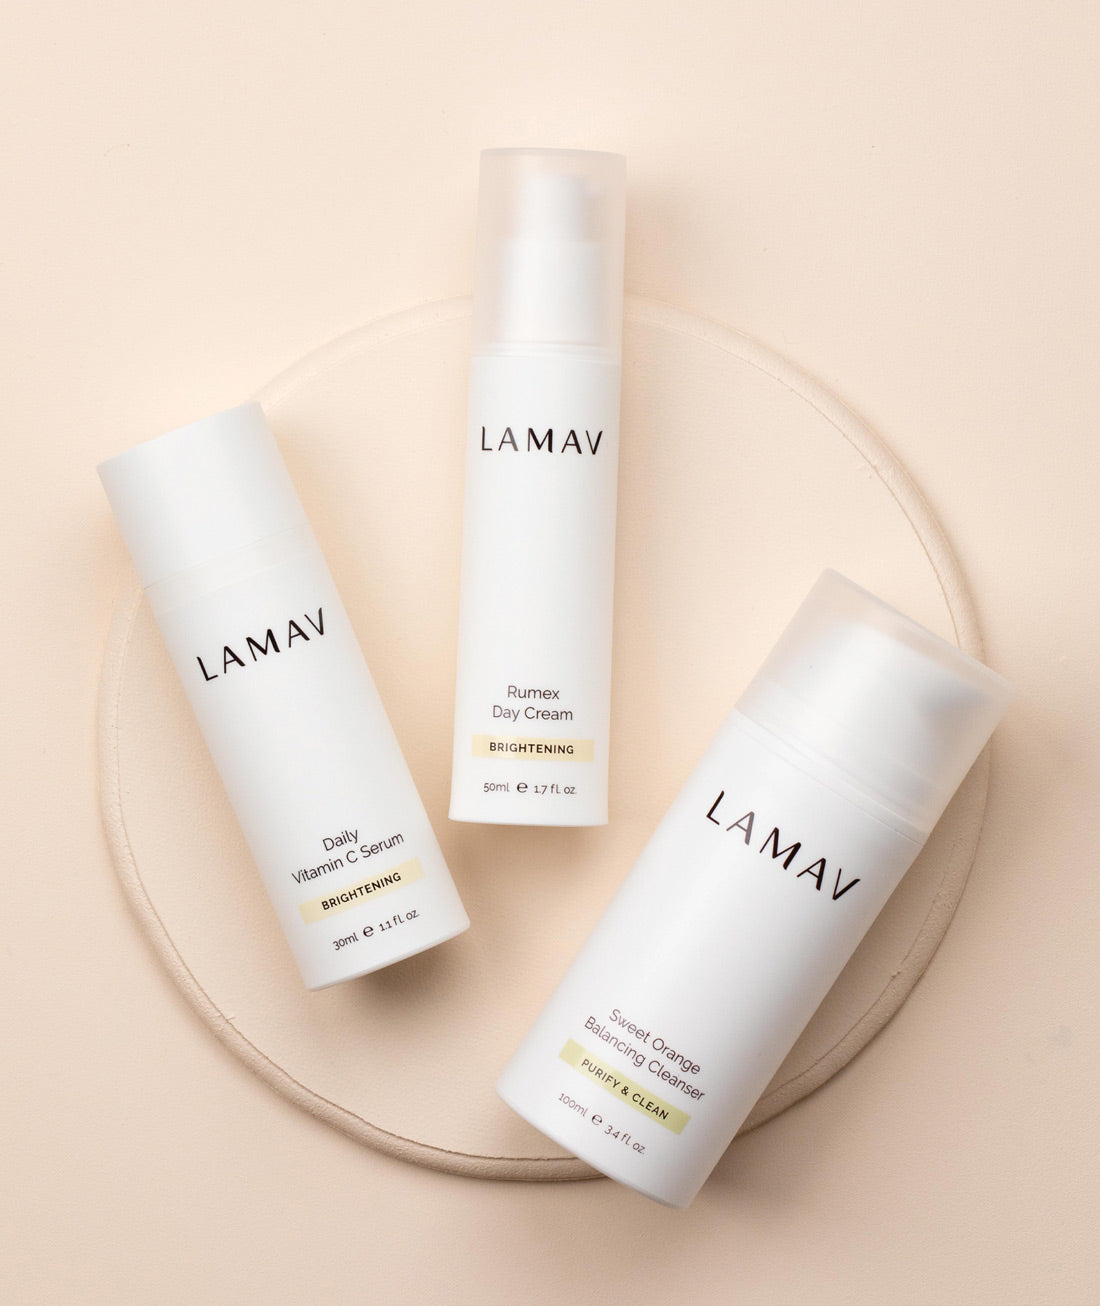 LAMAV organic skin brightening products